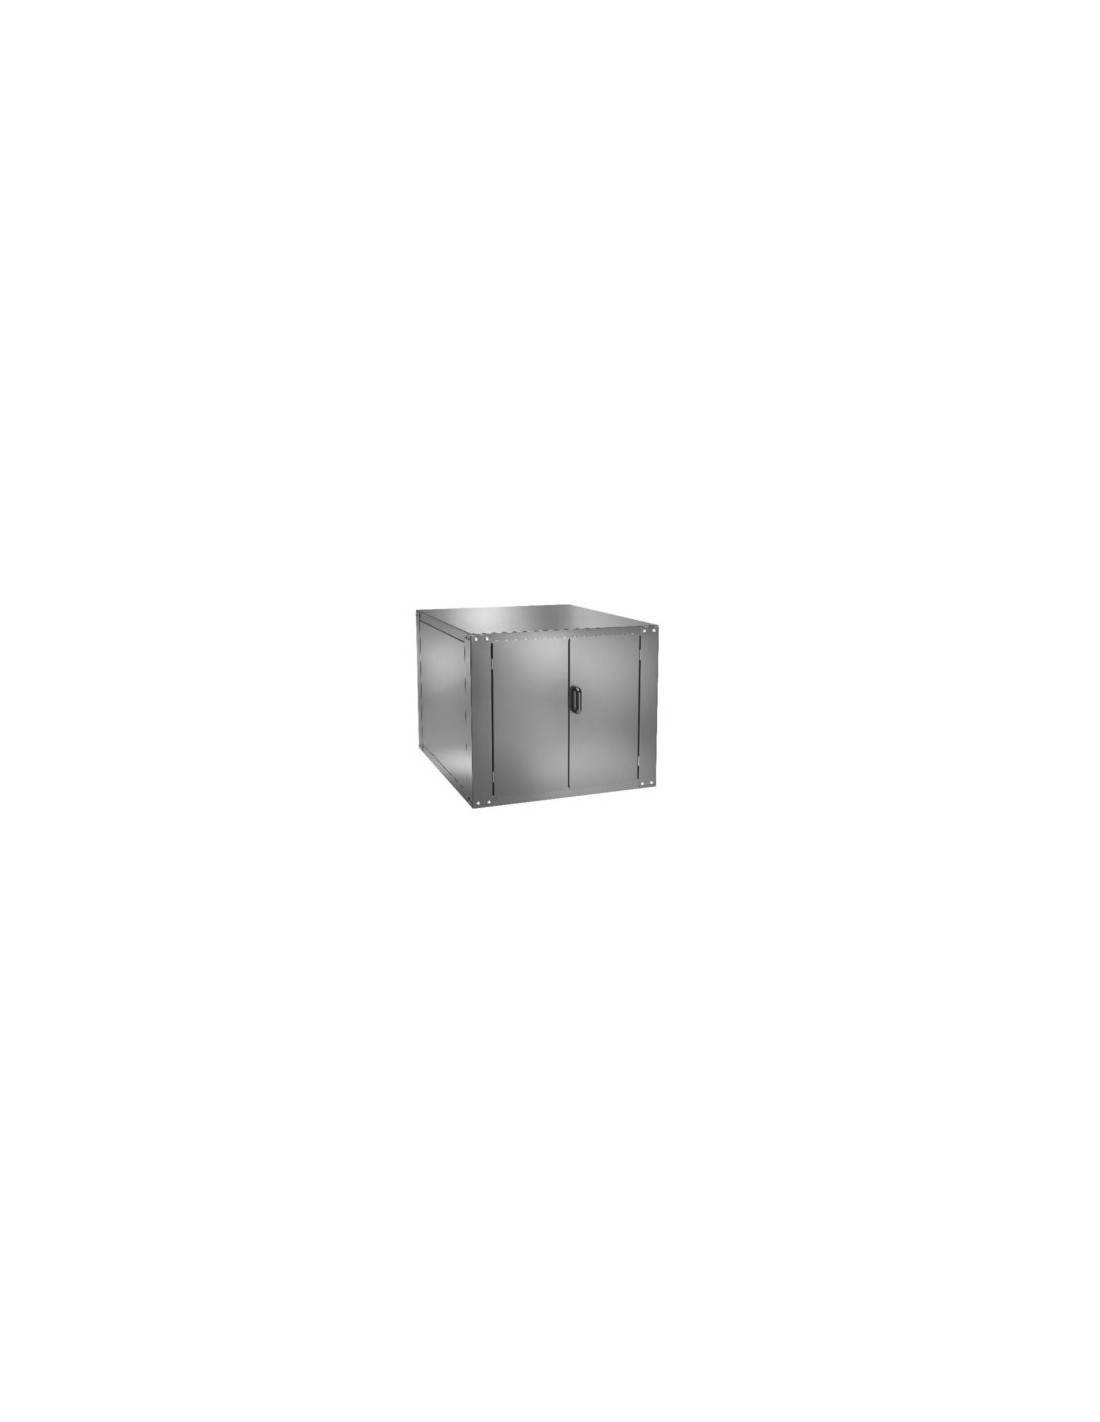 Cella lievitazione per forno mod. FMLW6+6 - Capacità  n. 9 teglie - Potenza 50÷90°C - Potenza kW 1.1 - Dimensioni cm 137 x 85.5